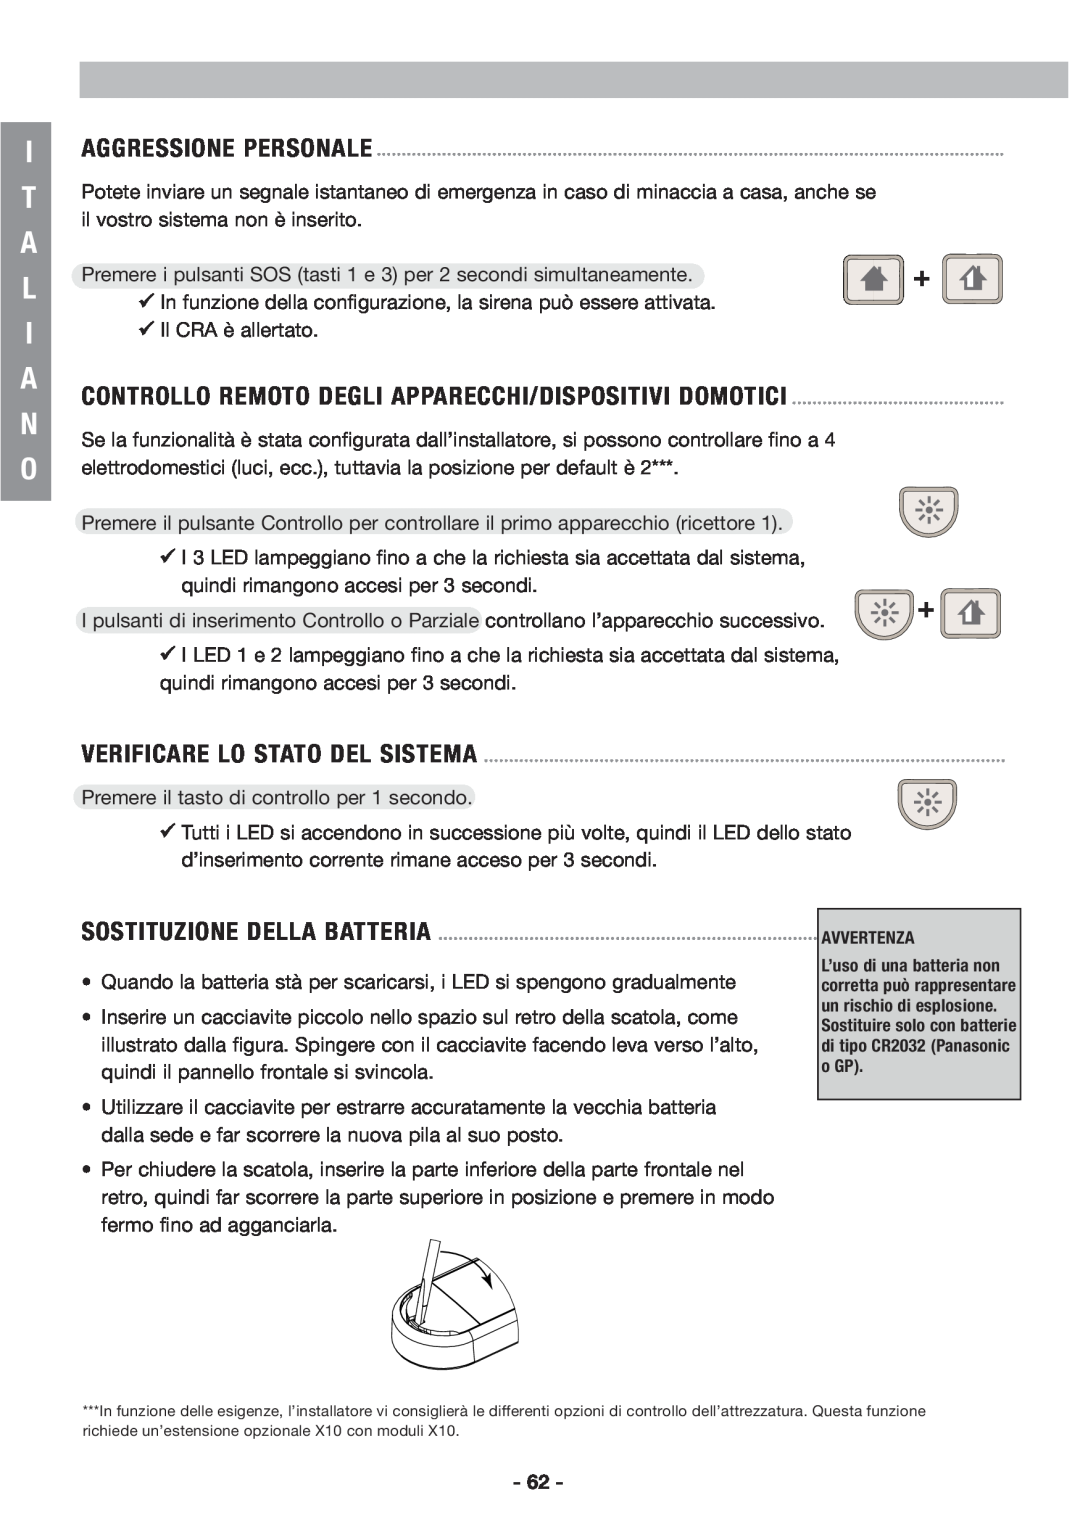 Honeywell EKZ008200B user manual Iaggressione Personale, Verificare Lo Stato Del Sistema, Sostituzione Della Batteria 